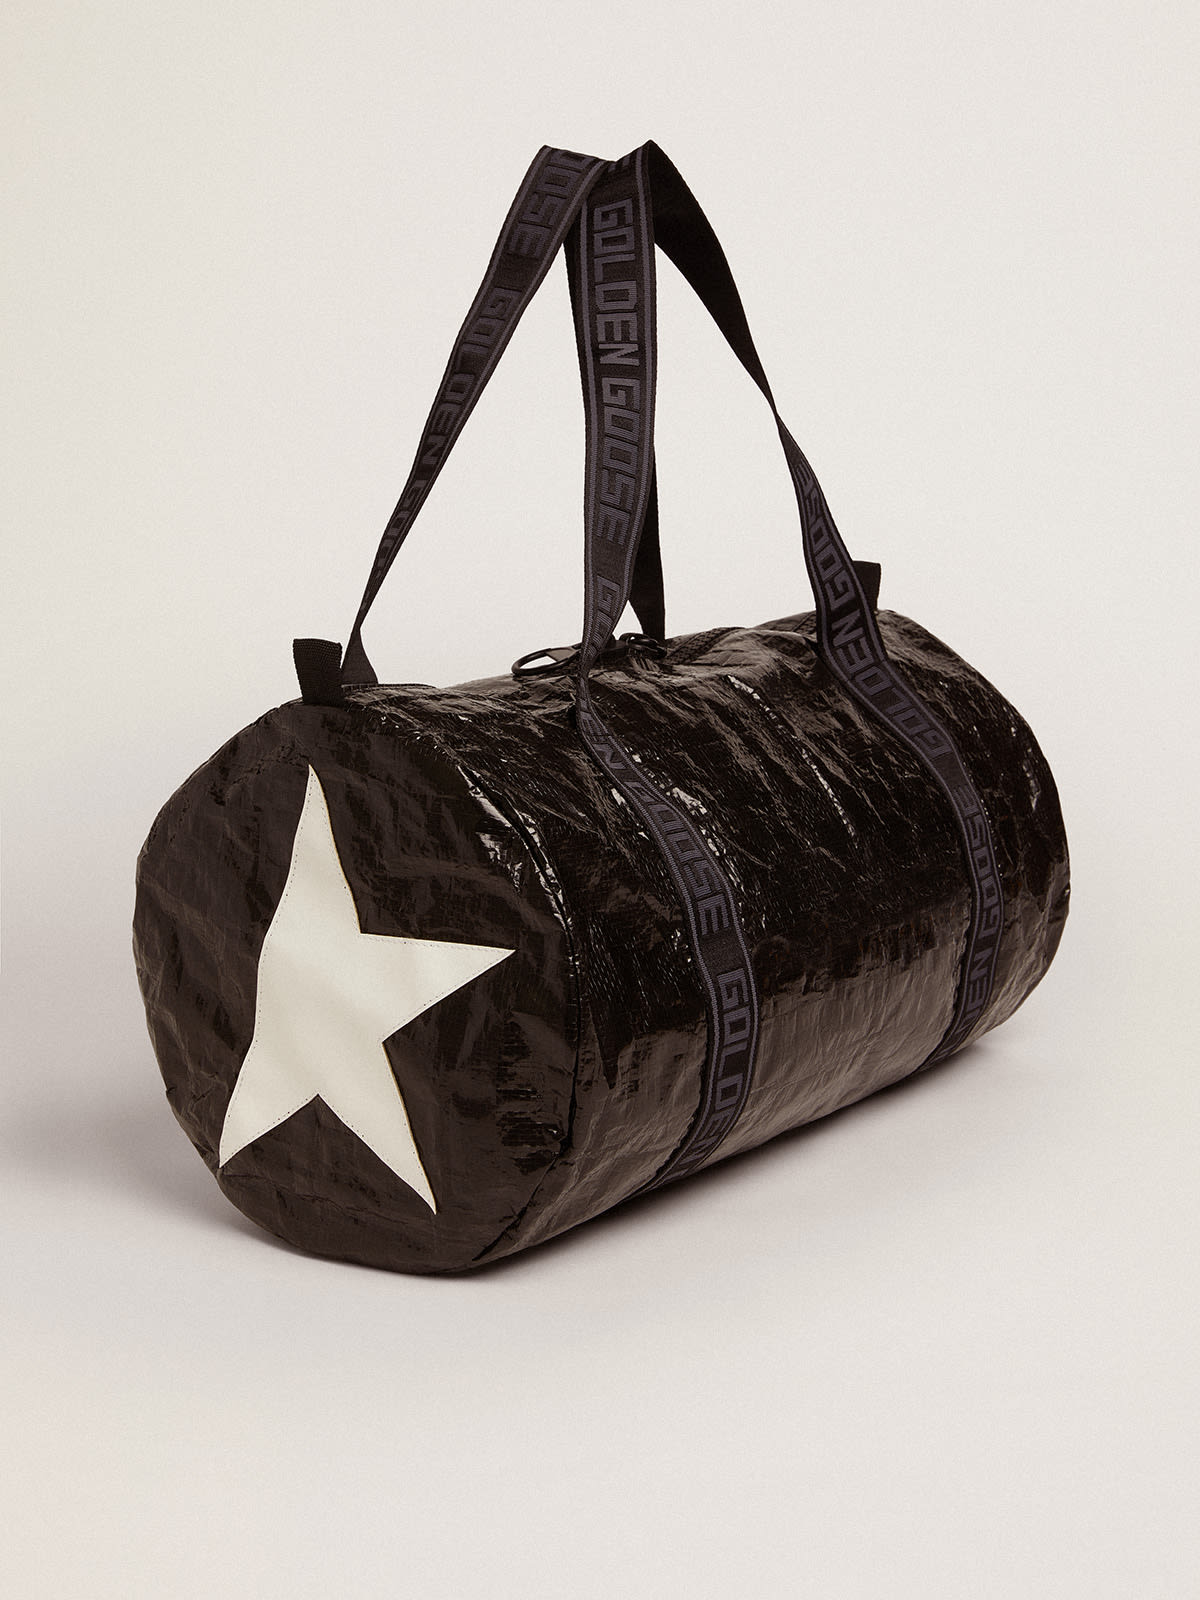 Golden Goose - Duffle Bag collection Star de couleur noire avec étoiles blanches sur les côtés in 